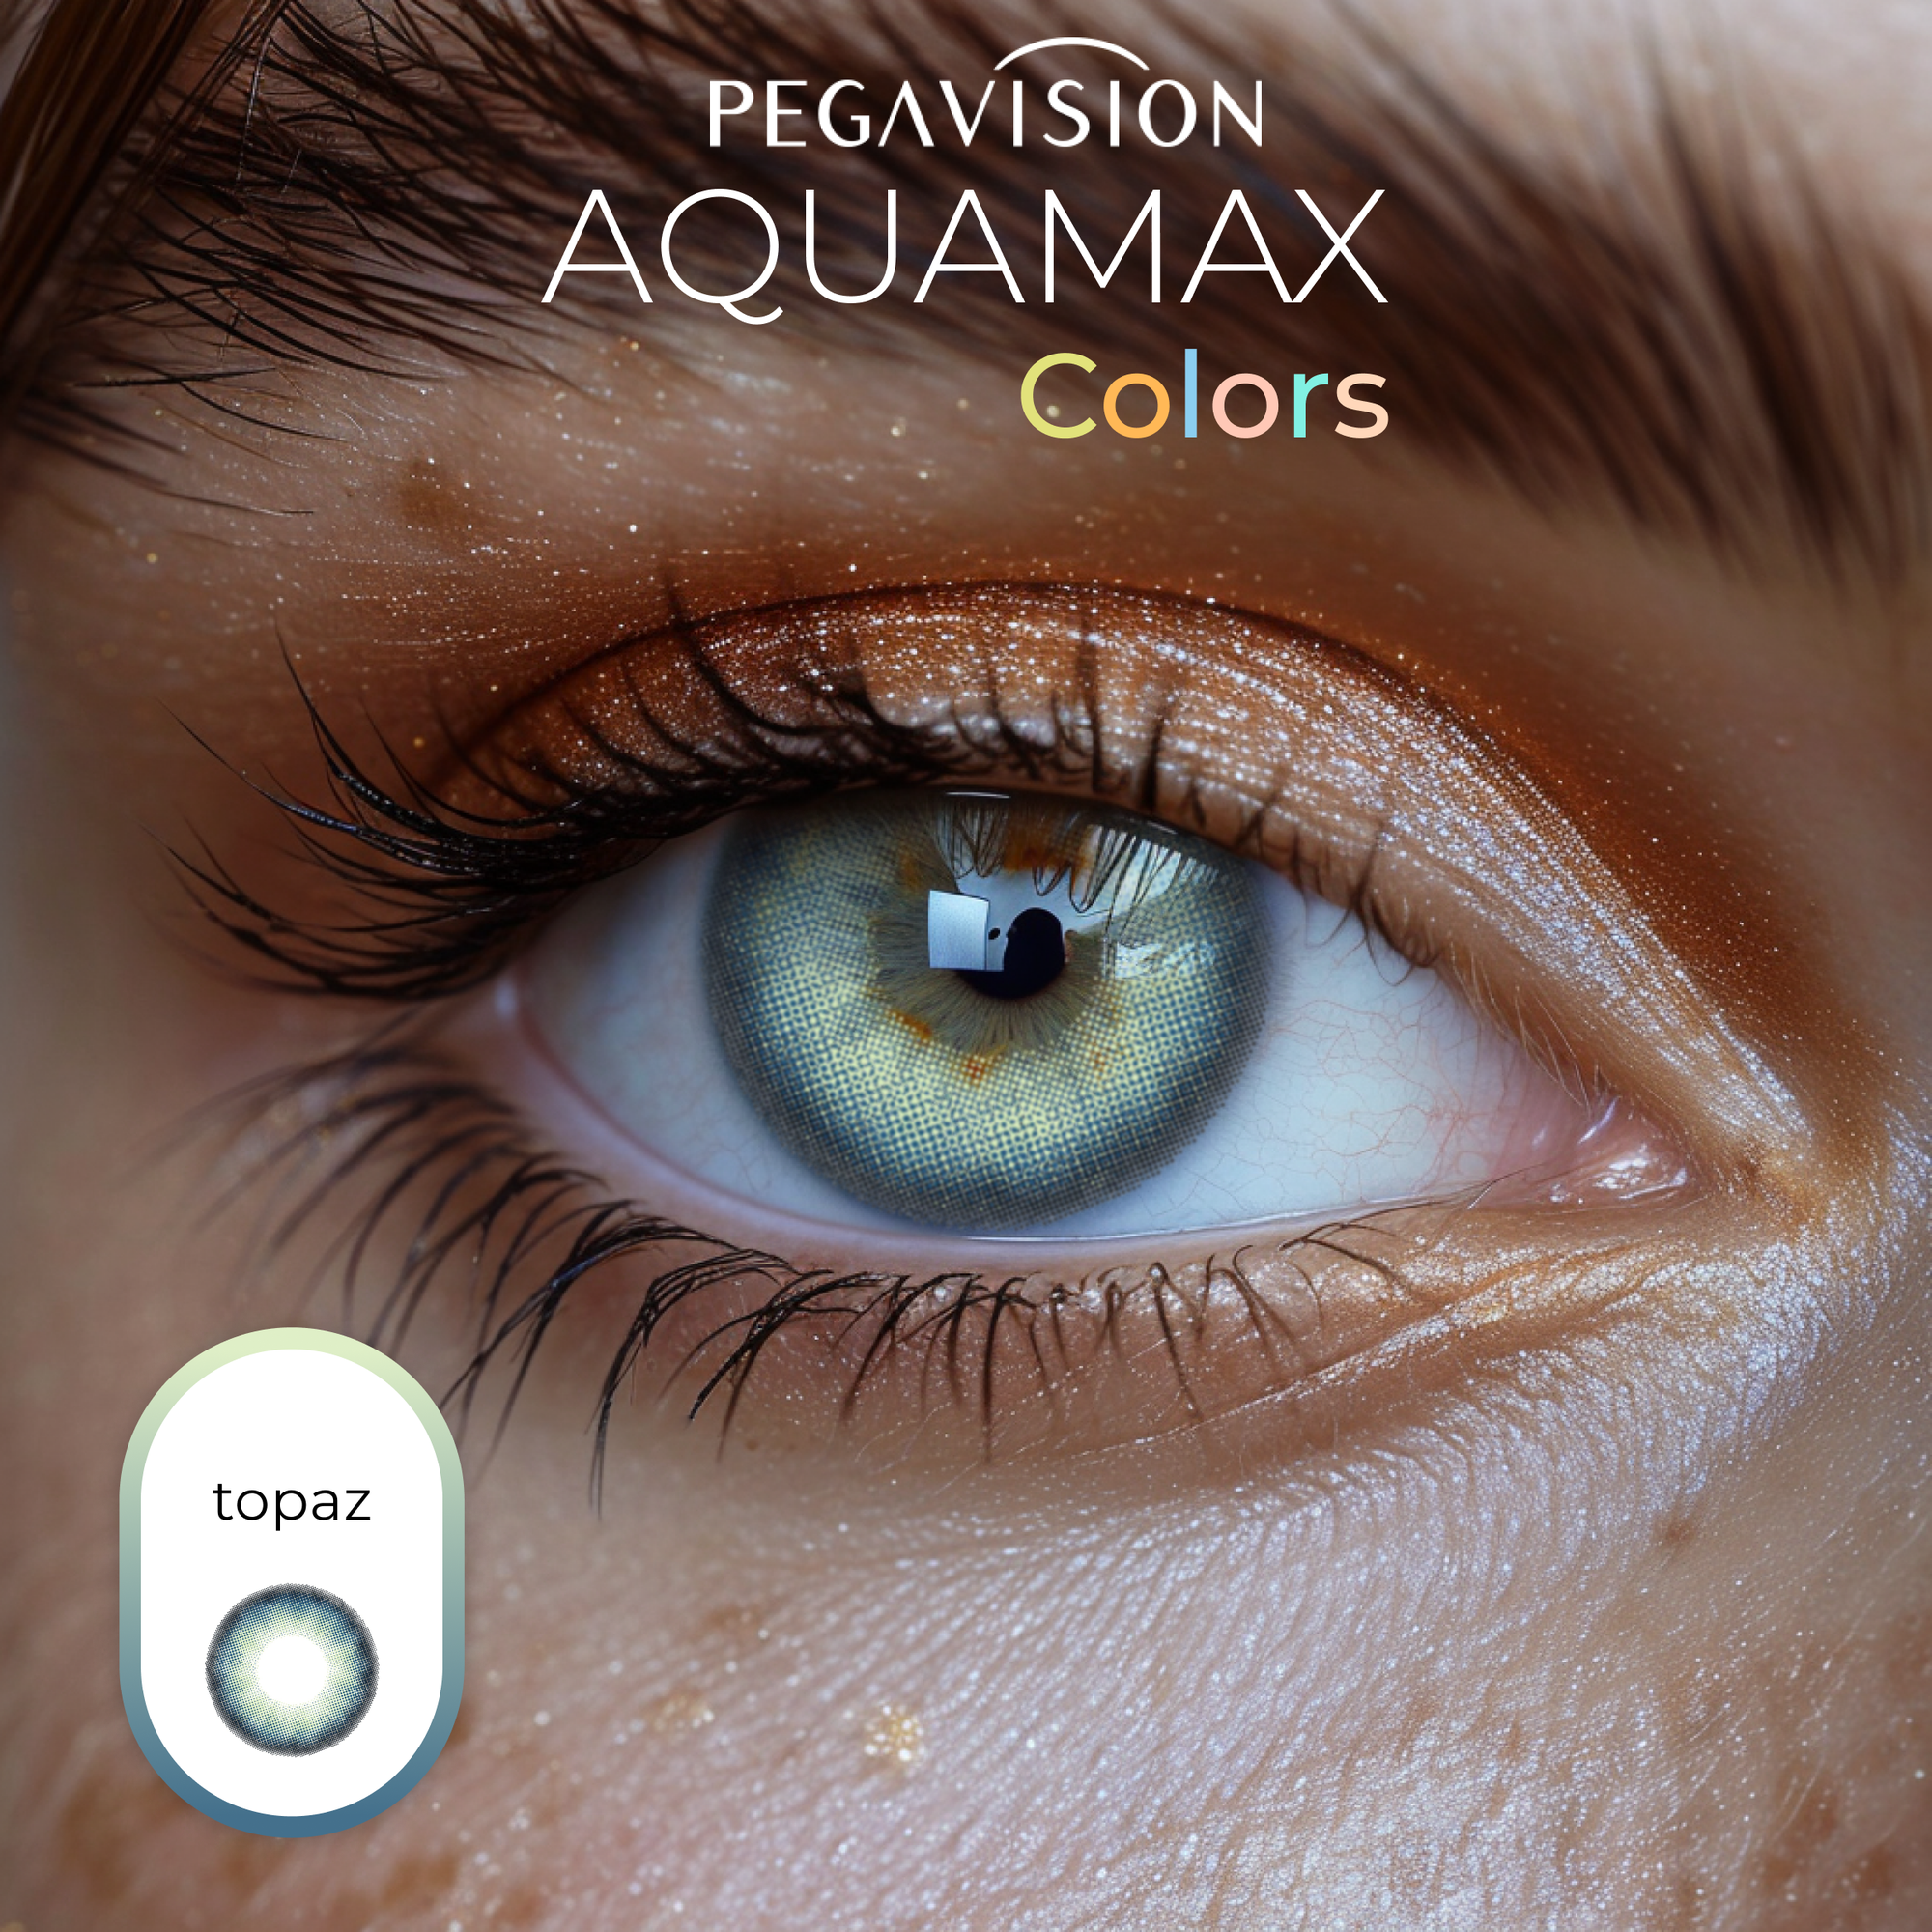 Цветные линзы Pegavision Aquamax Colors 2 линзы R 8.6 SPH -1.00 Topaz (топаз) D 14.2, ежемесячные